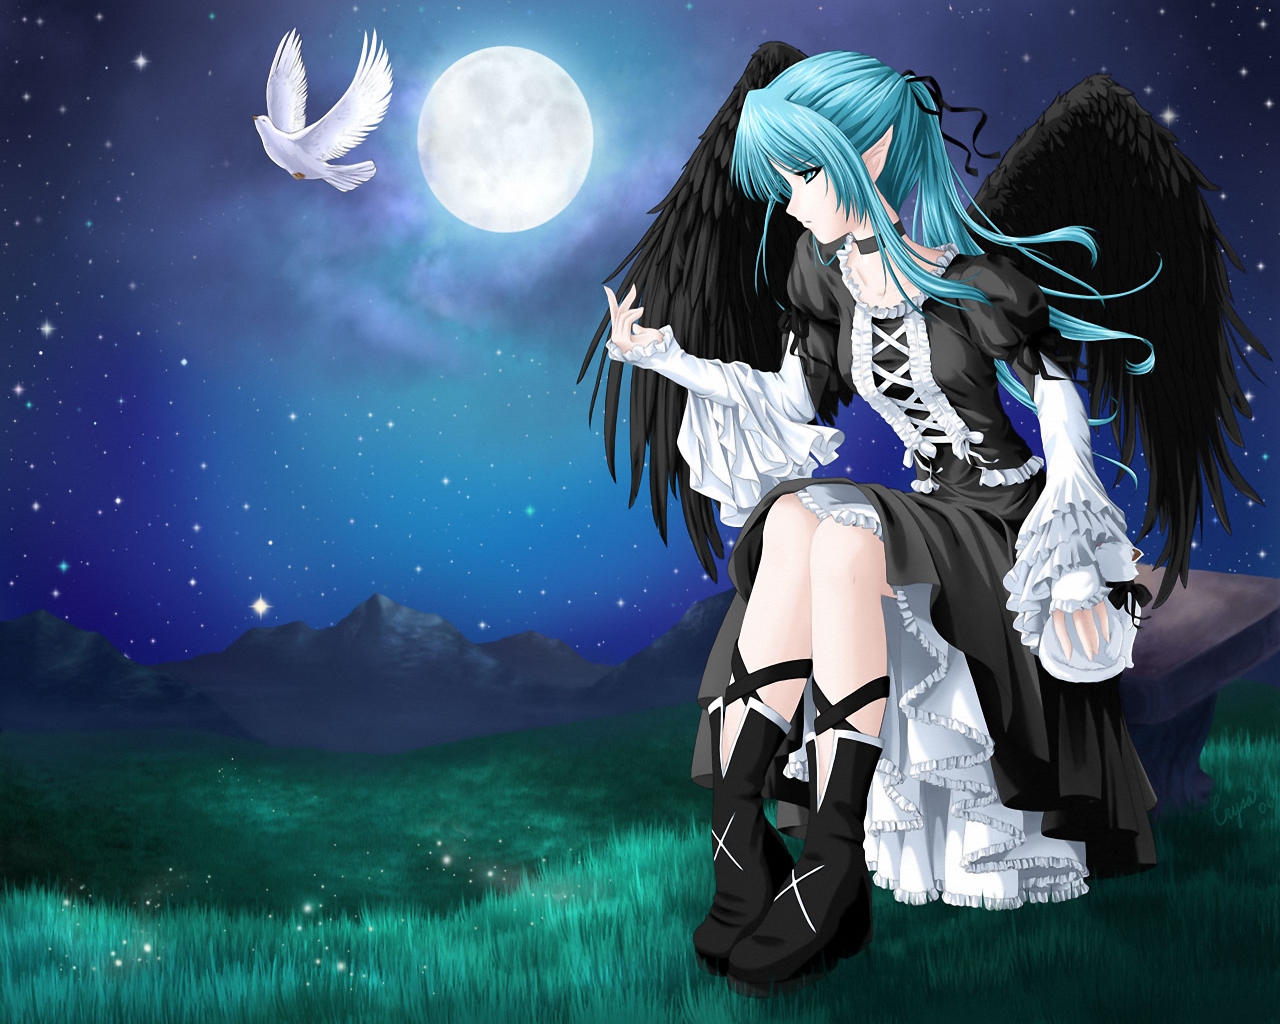 3d обои Девушка с чёрными крыльями лунной ночью сидит на скамейке и смотрит на улетающего с её руки белого голубя  луна # 51458